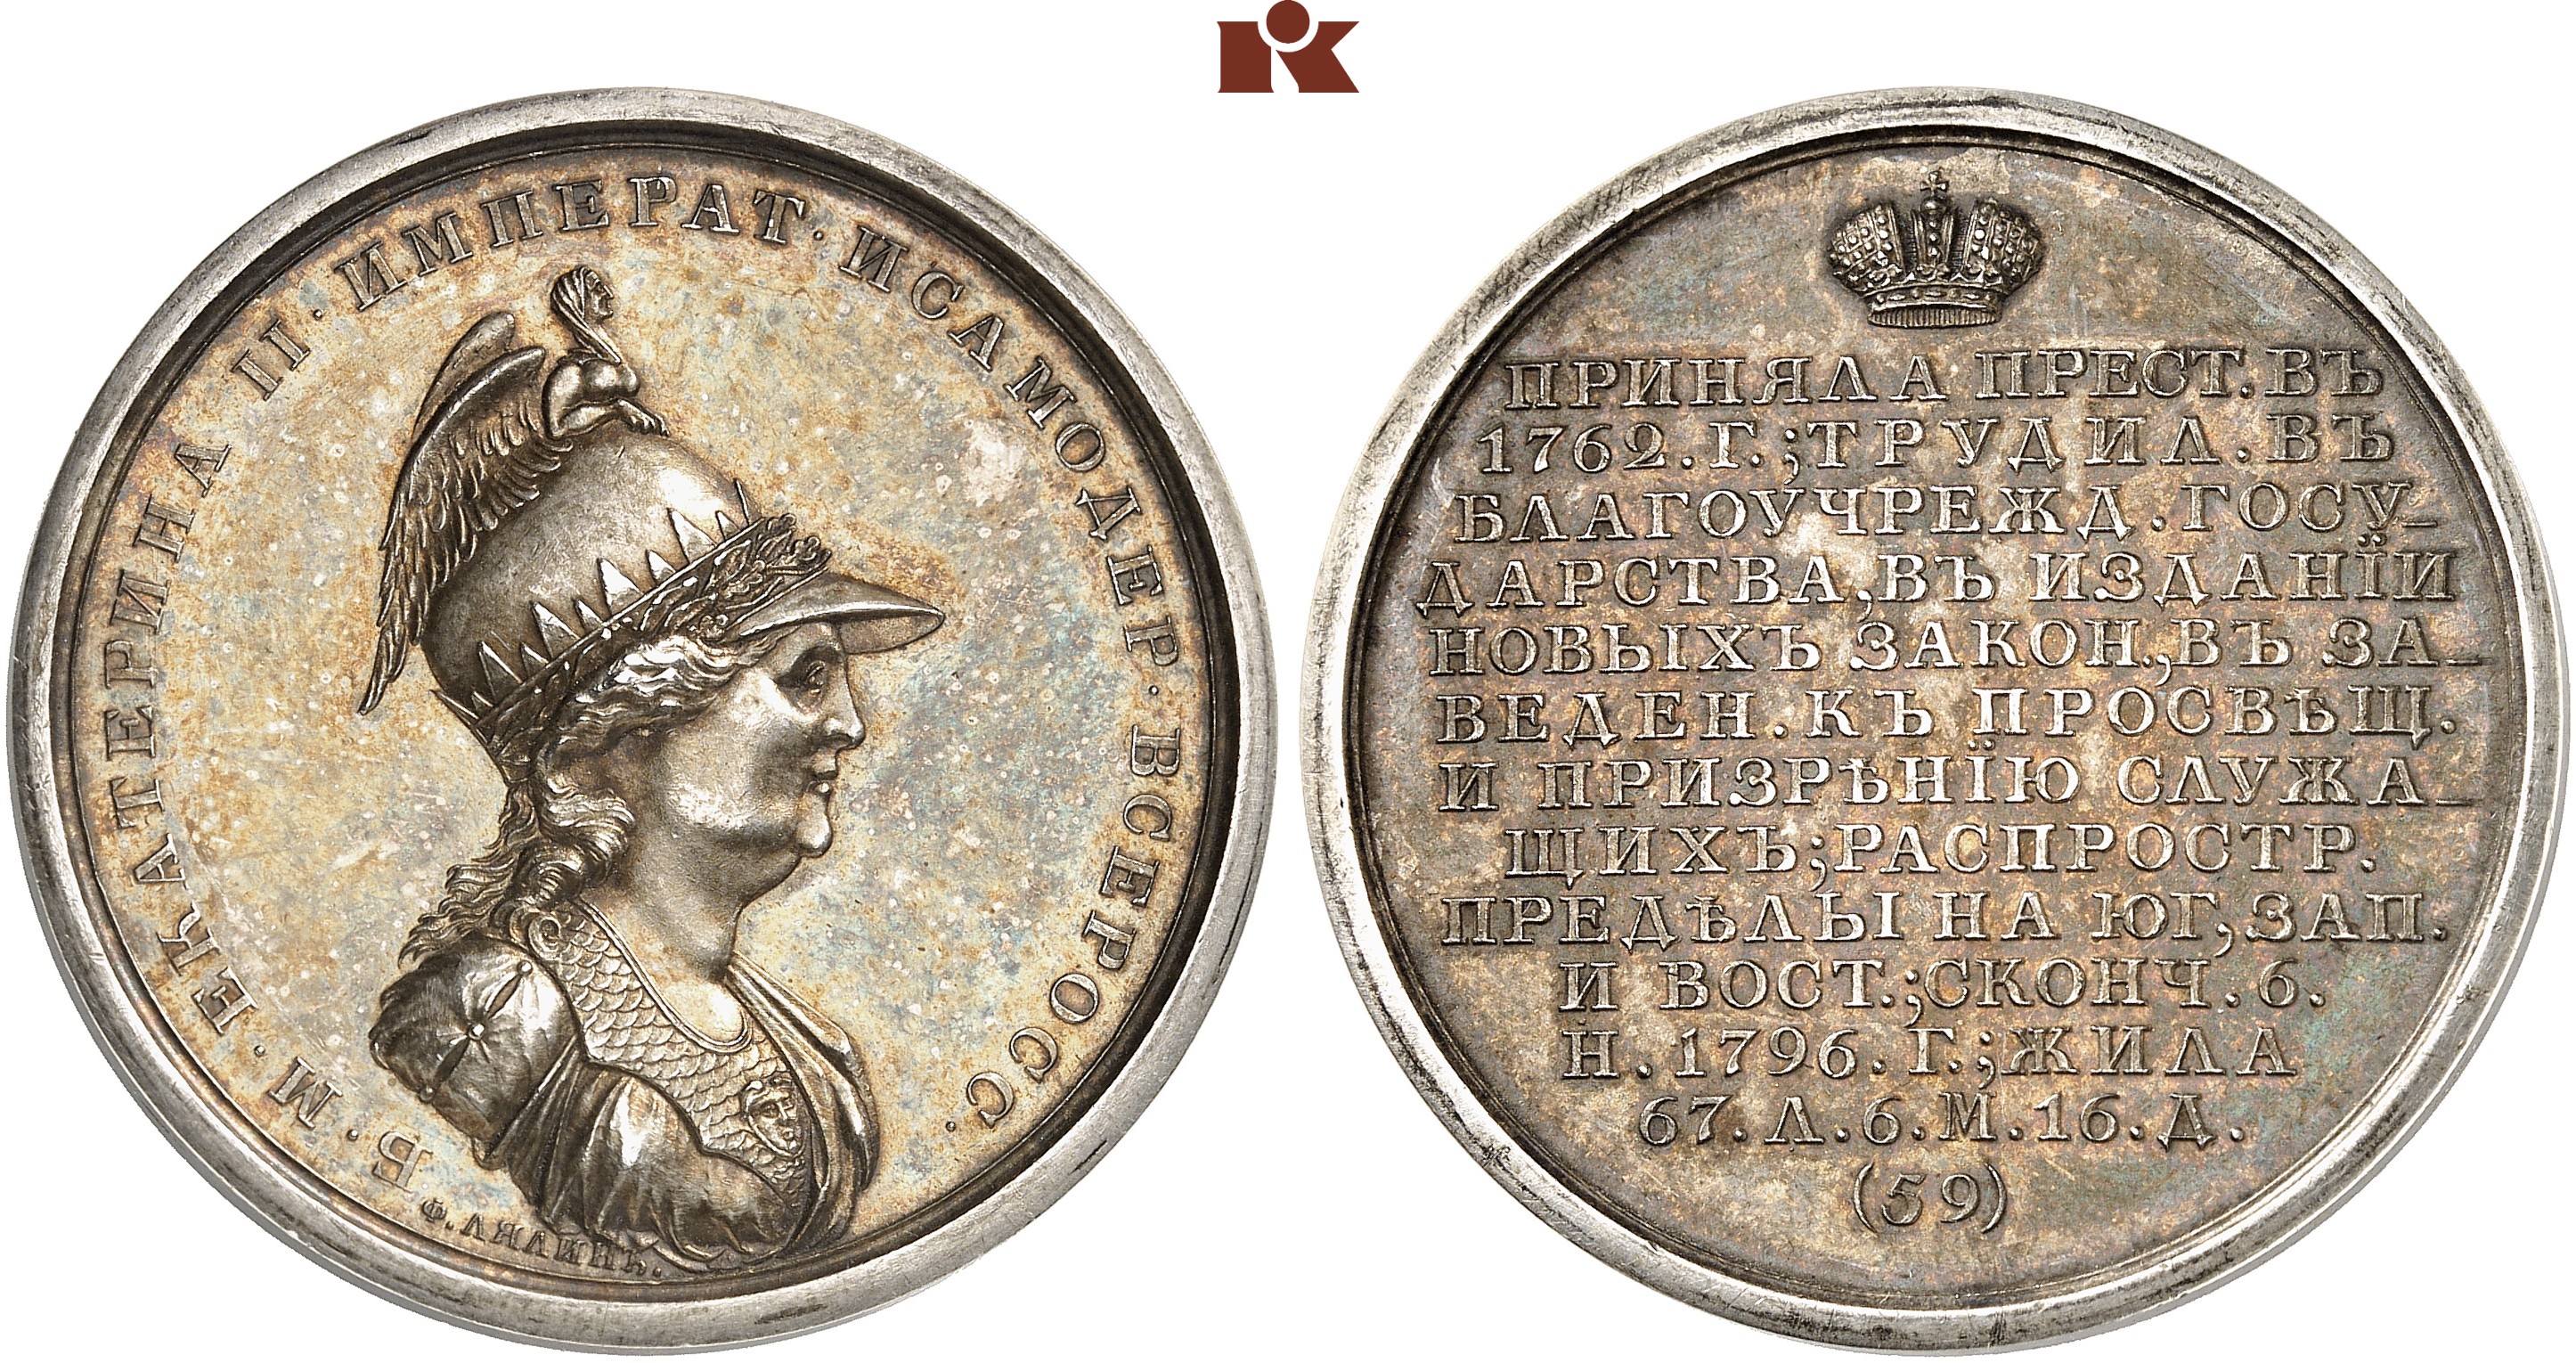 Назовите изображенного на медали императора 1715 1730. Назовите изображённую на медали императрицу 1724.